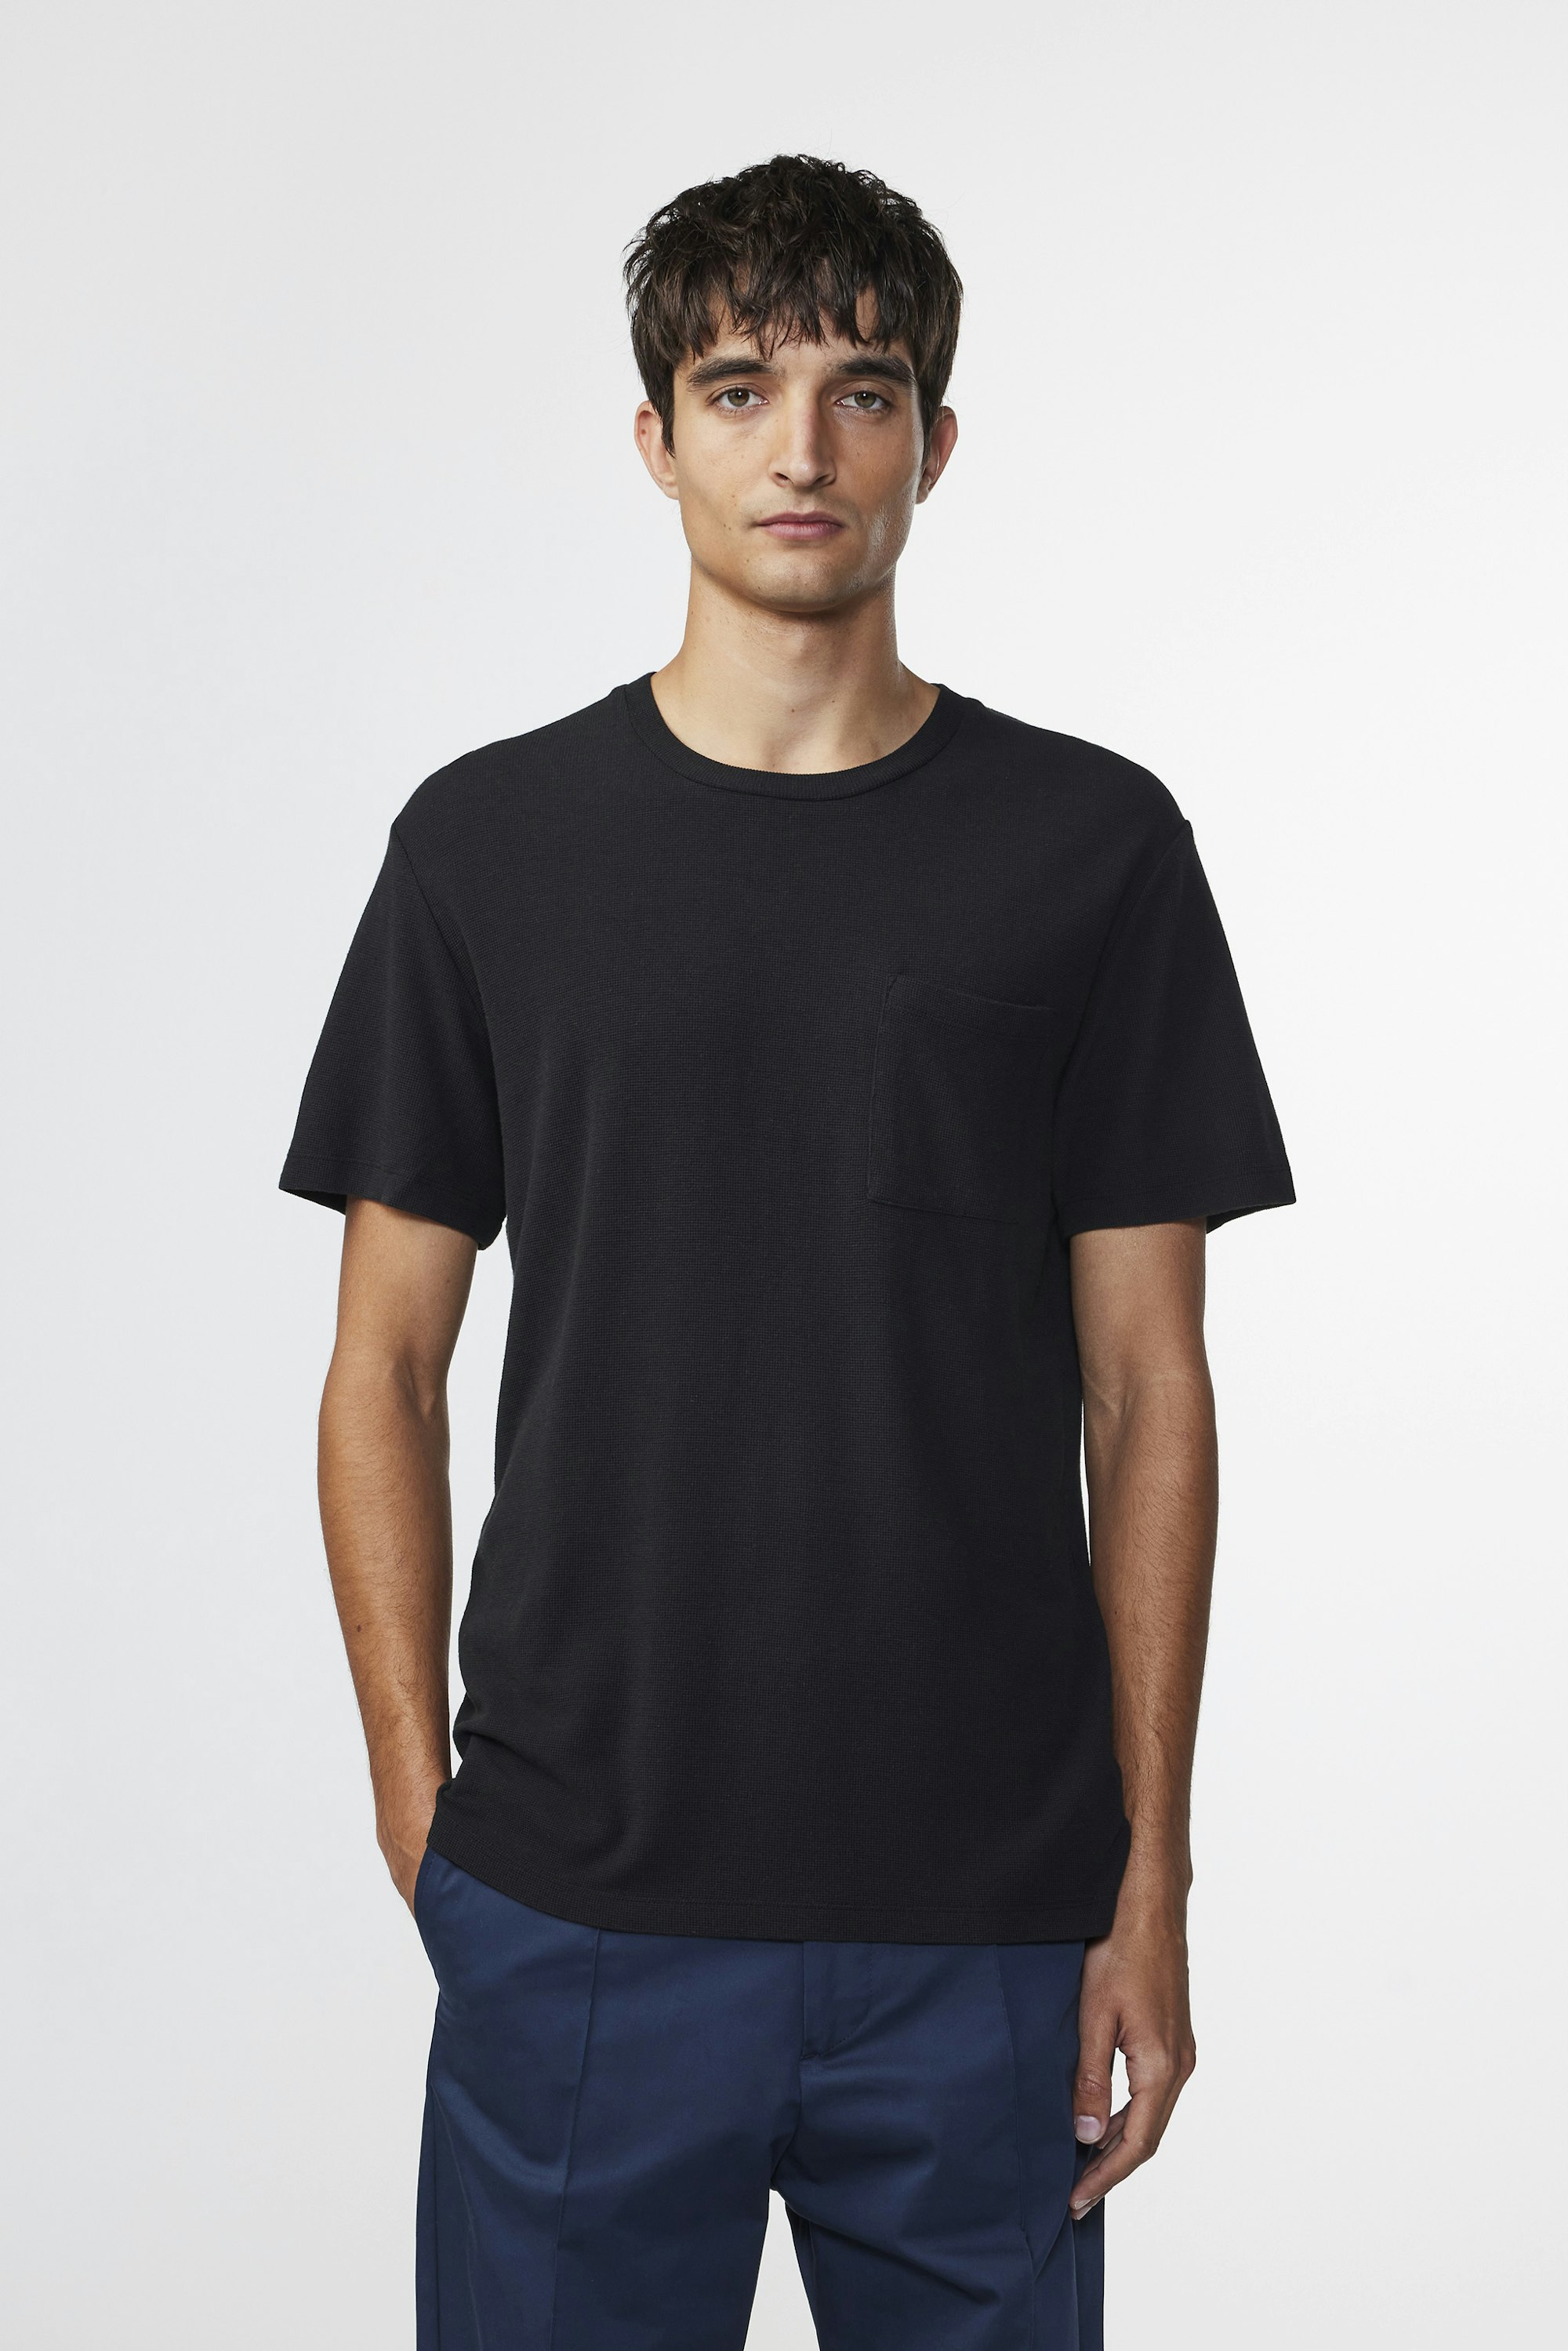 Clive 3323 at - Buy - men\'s Black online t-shirt